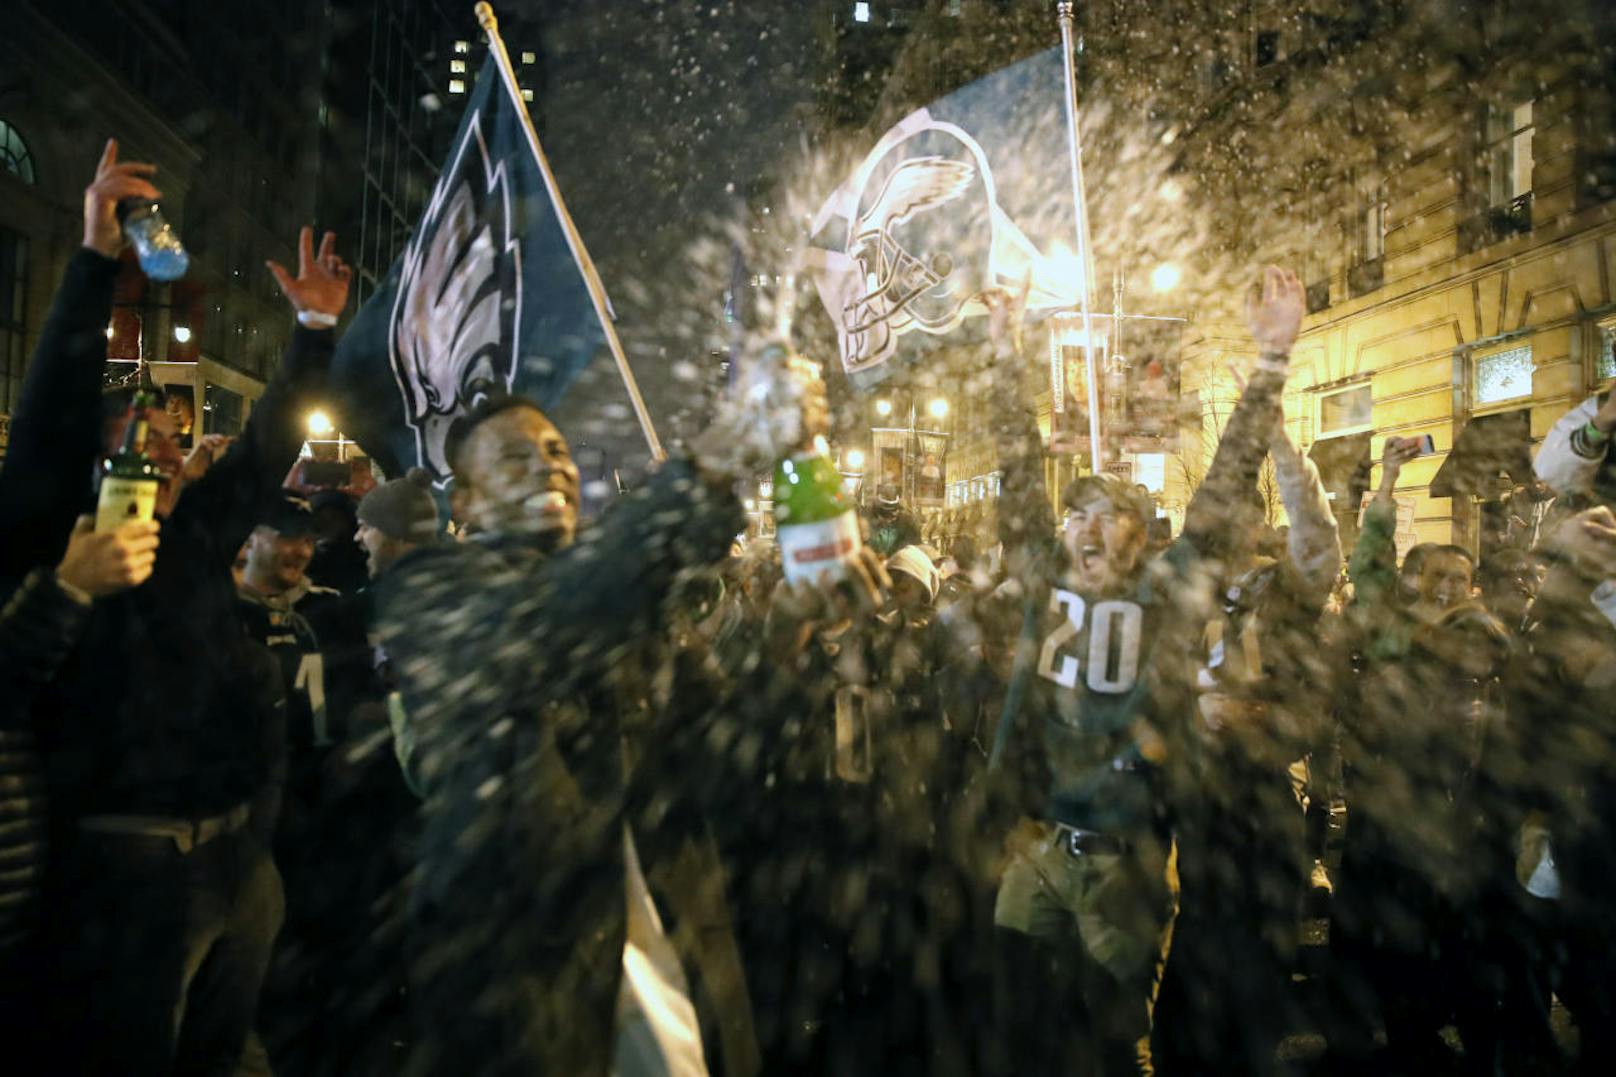 Nach dem Sieg über die New England Patriots ging in der Heimatstadt der Philadelphia Eagles ordentlich die Post ab. Fans feierten auf den Straßen ausgelassen den ersten Super-Bowl-Titel, die Ausgelassenheit wurde allerdings bald gewalttätig und schlug in Vandalismus und Sachbeschädigung um.